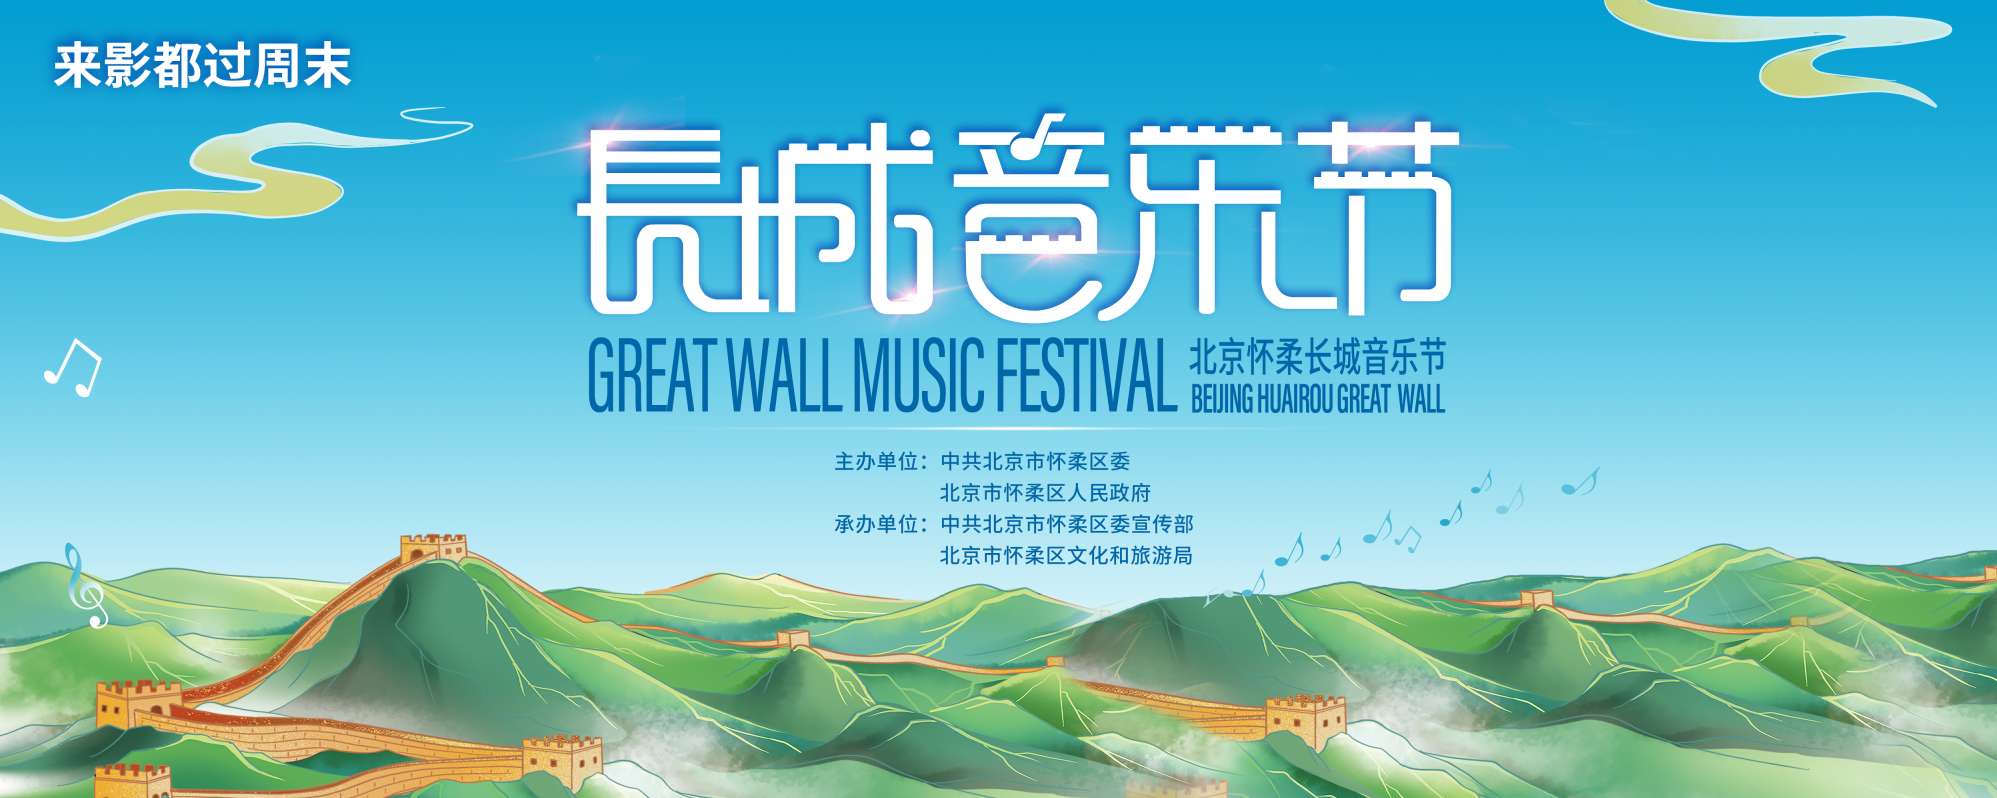 2022北京懷柔長城音樂節將在慕田峪長城盛大開幕